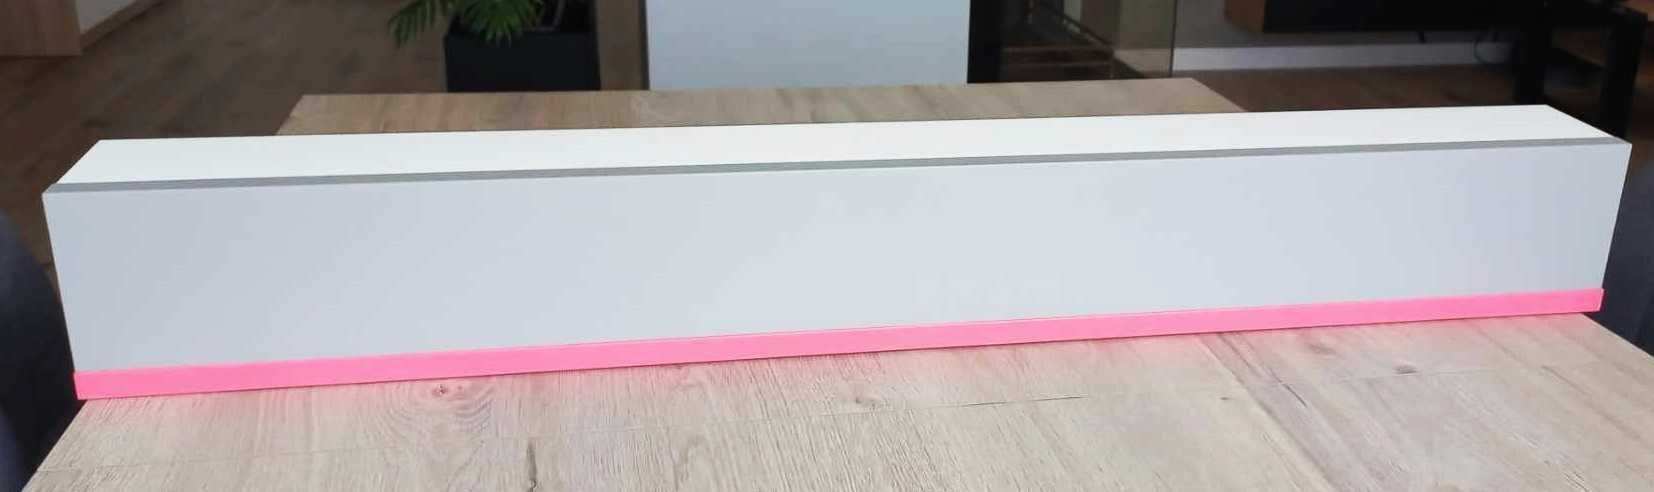 Półka wisząca leżąca biało-różowa długość 92cm